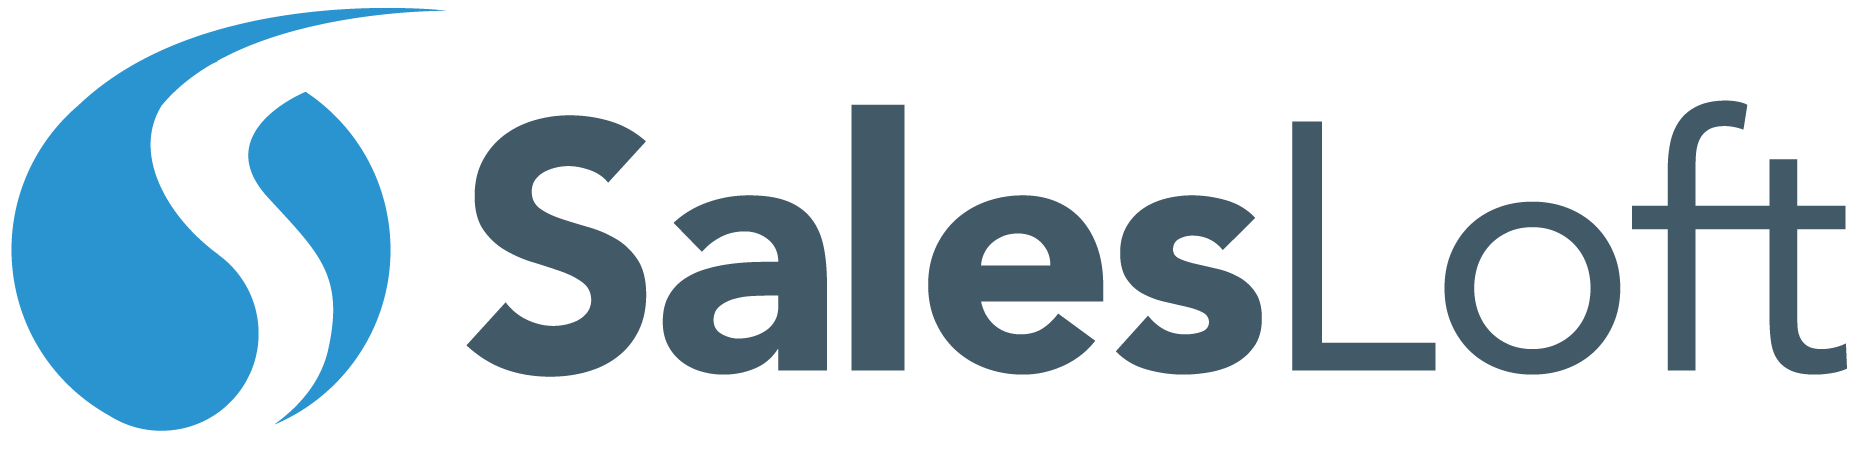 SalesLoft Logo - Career Opportunities - SalesLoft